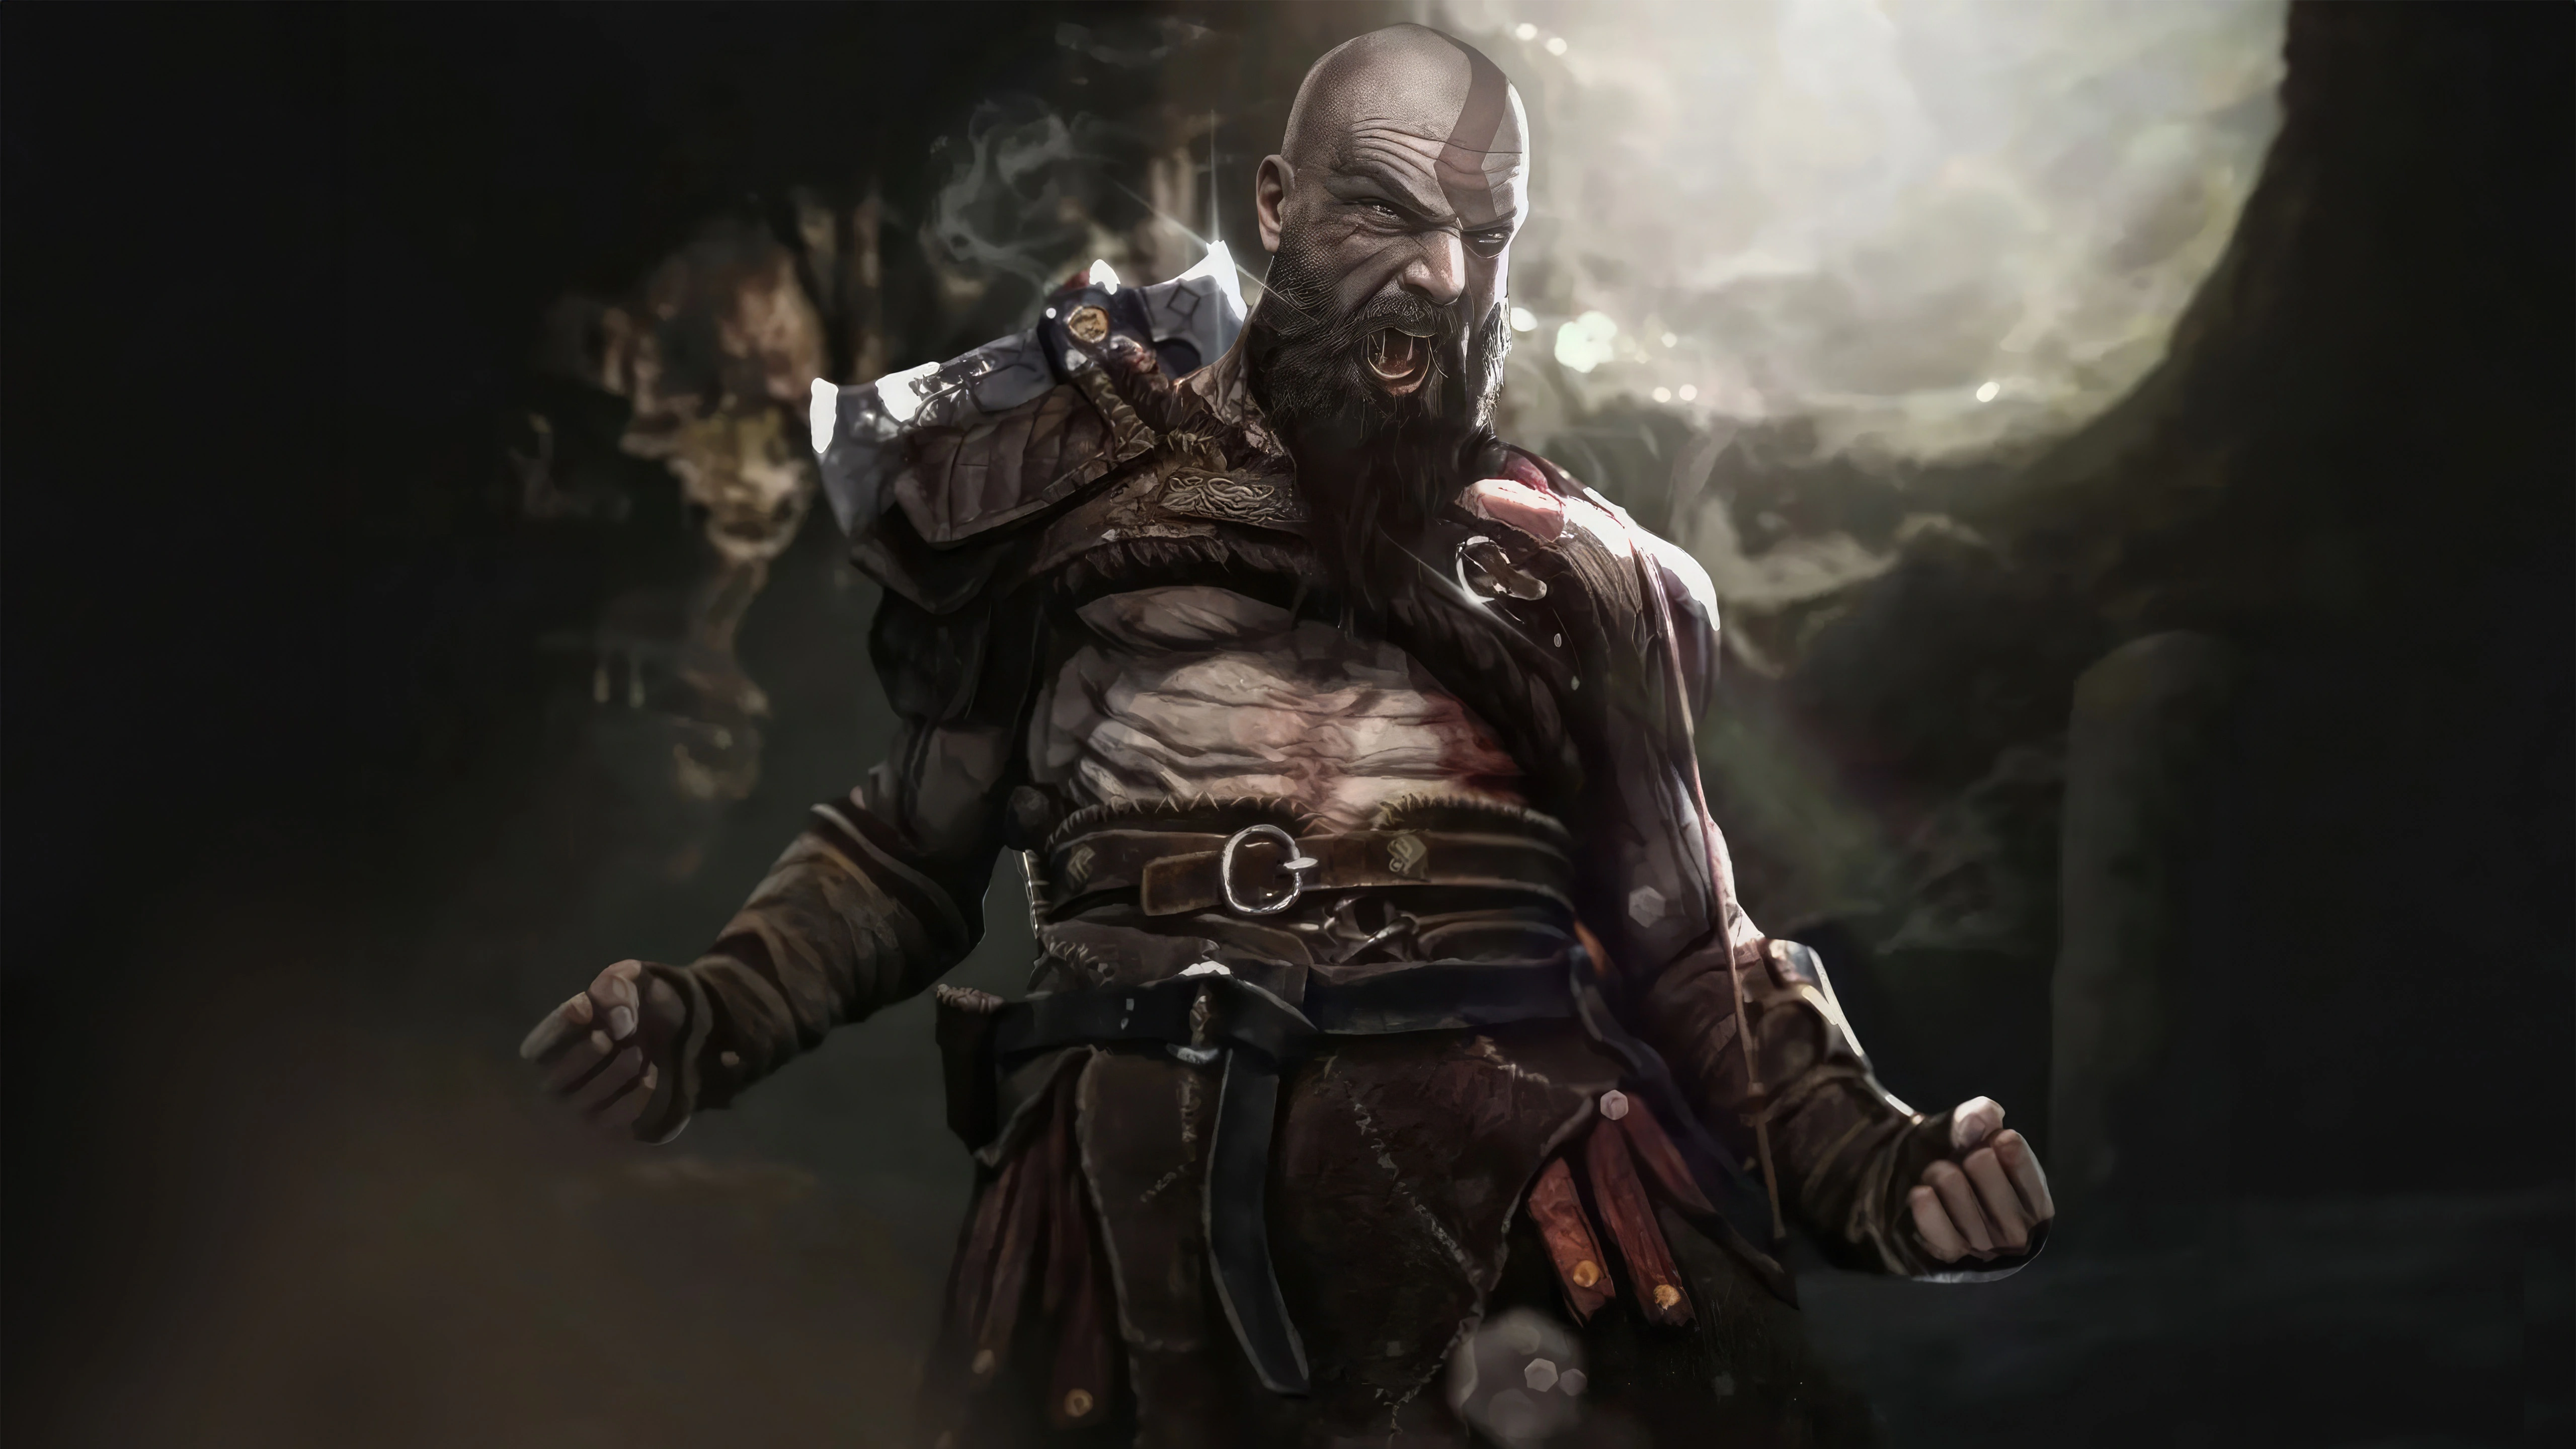 the angry kratos god of war 5k 4g.jpg